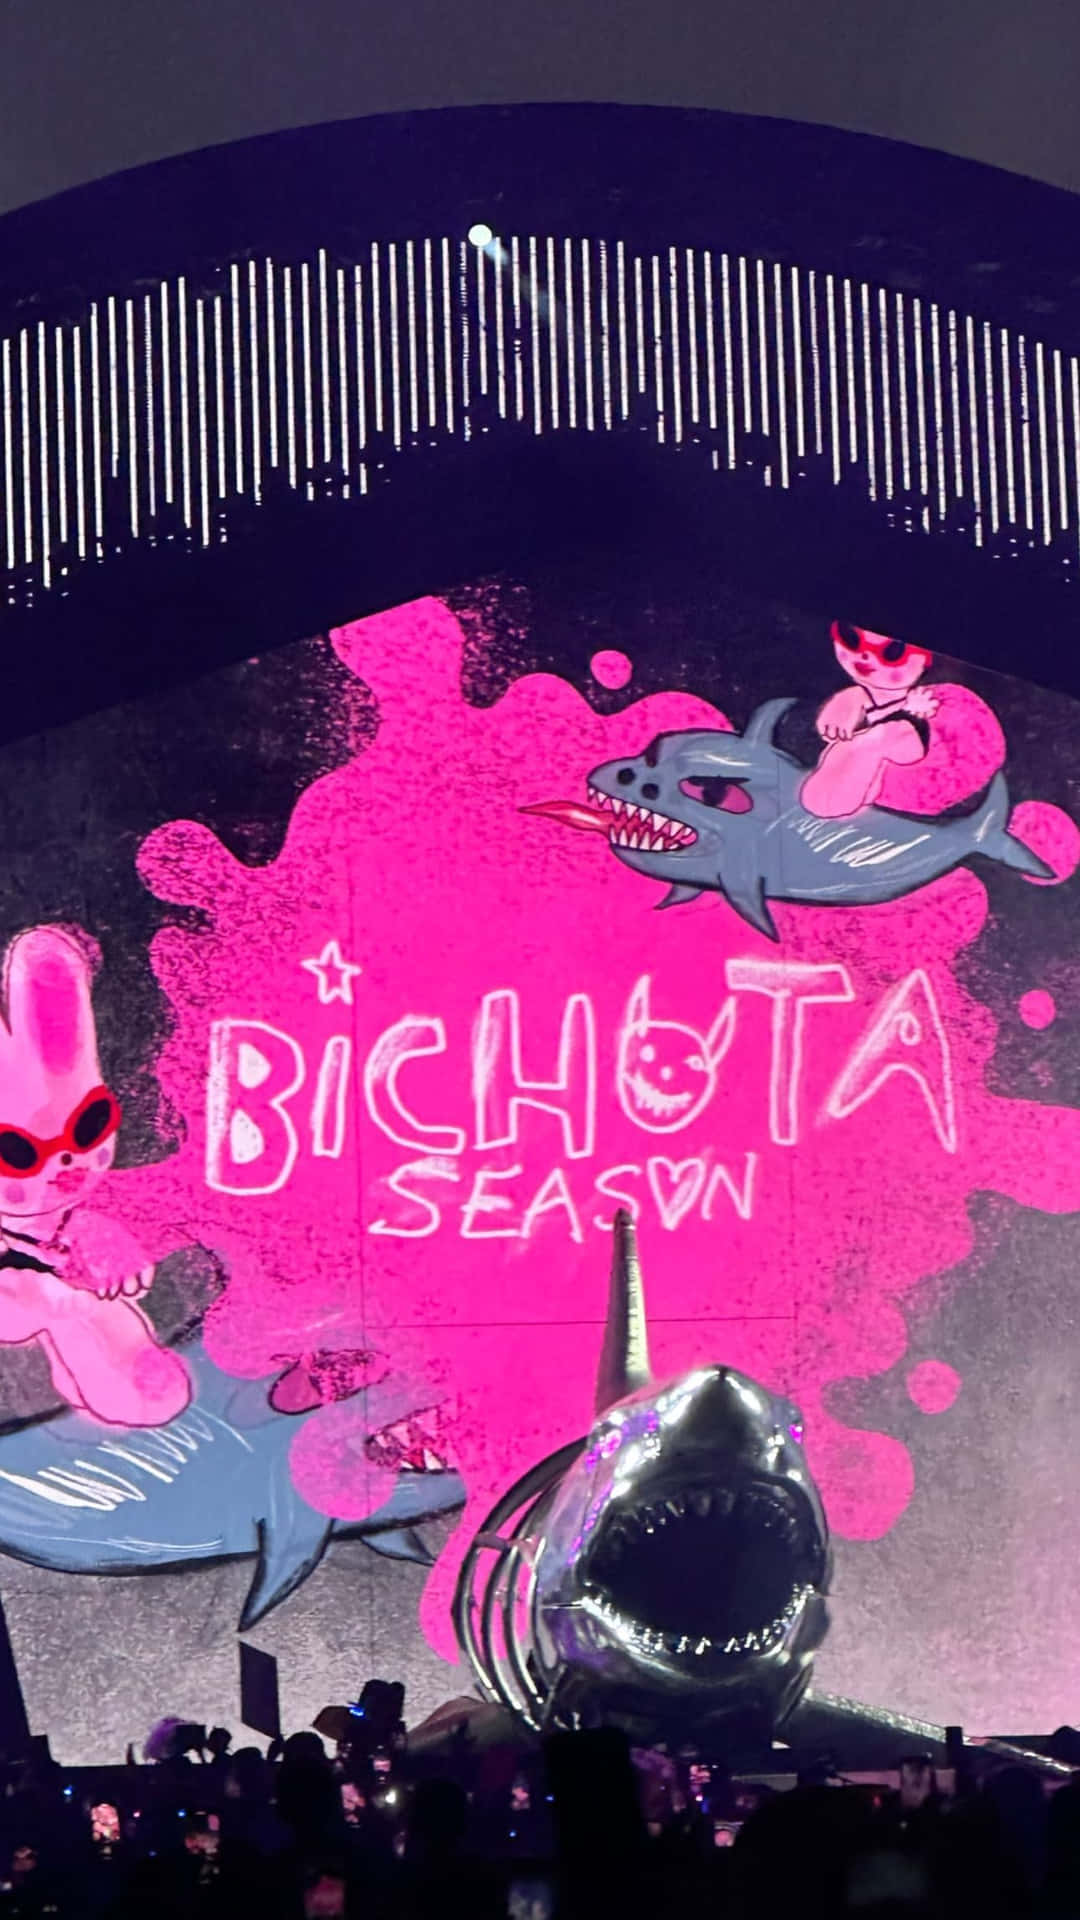 Bichota Season Concert Backdrop Wallpaper